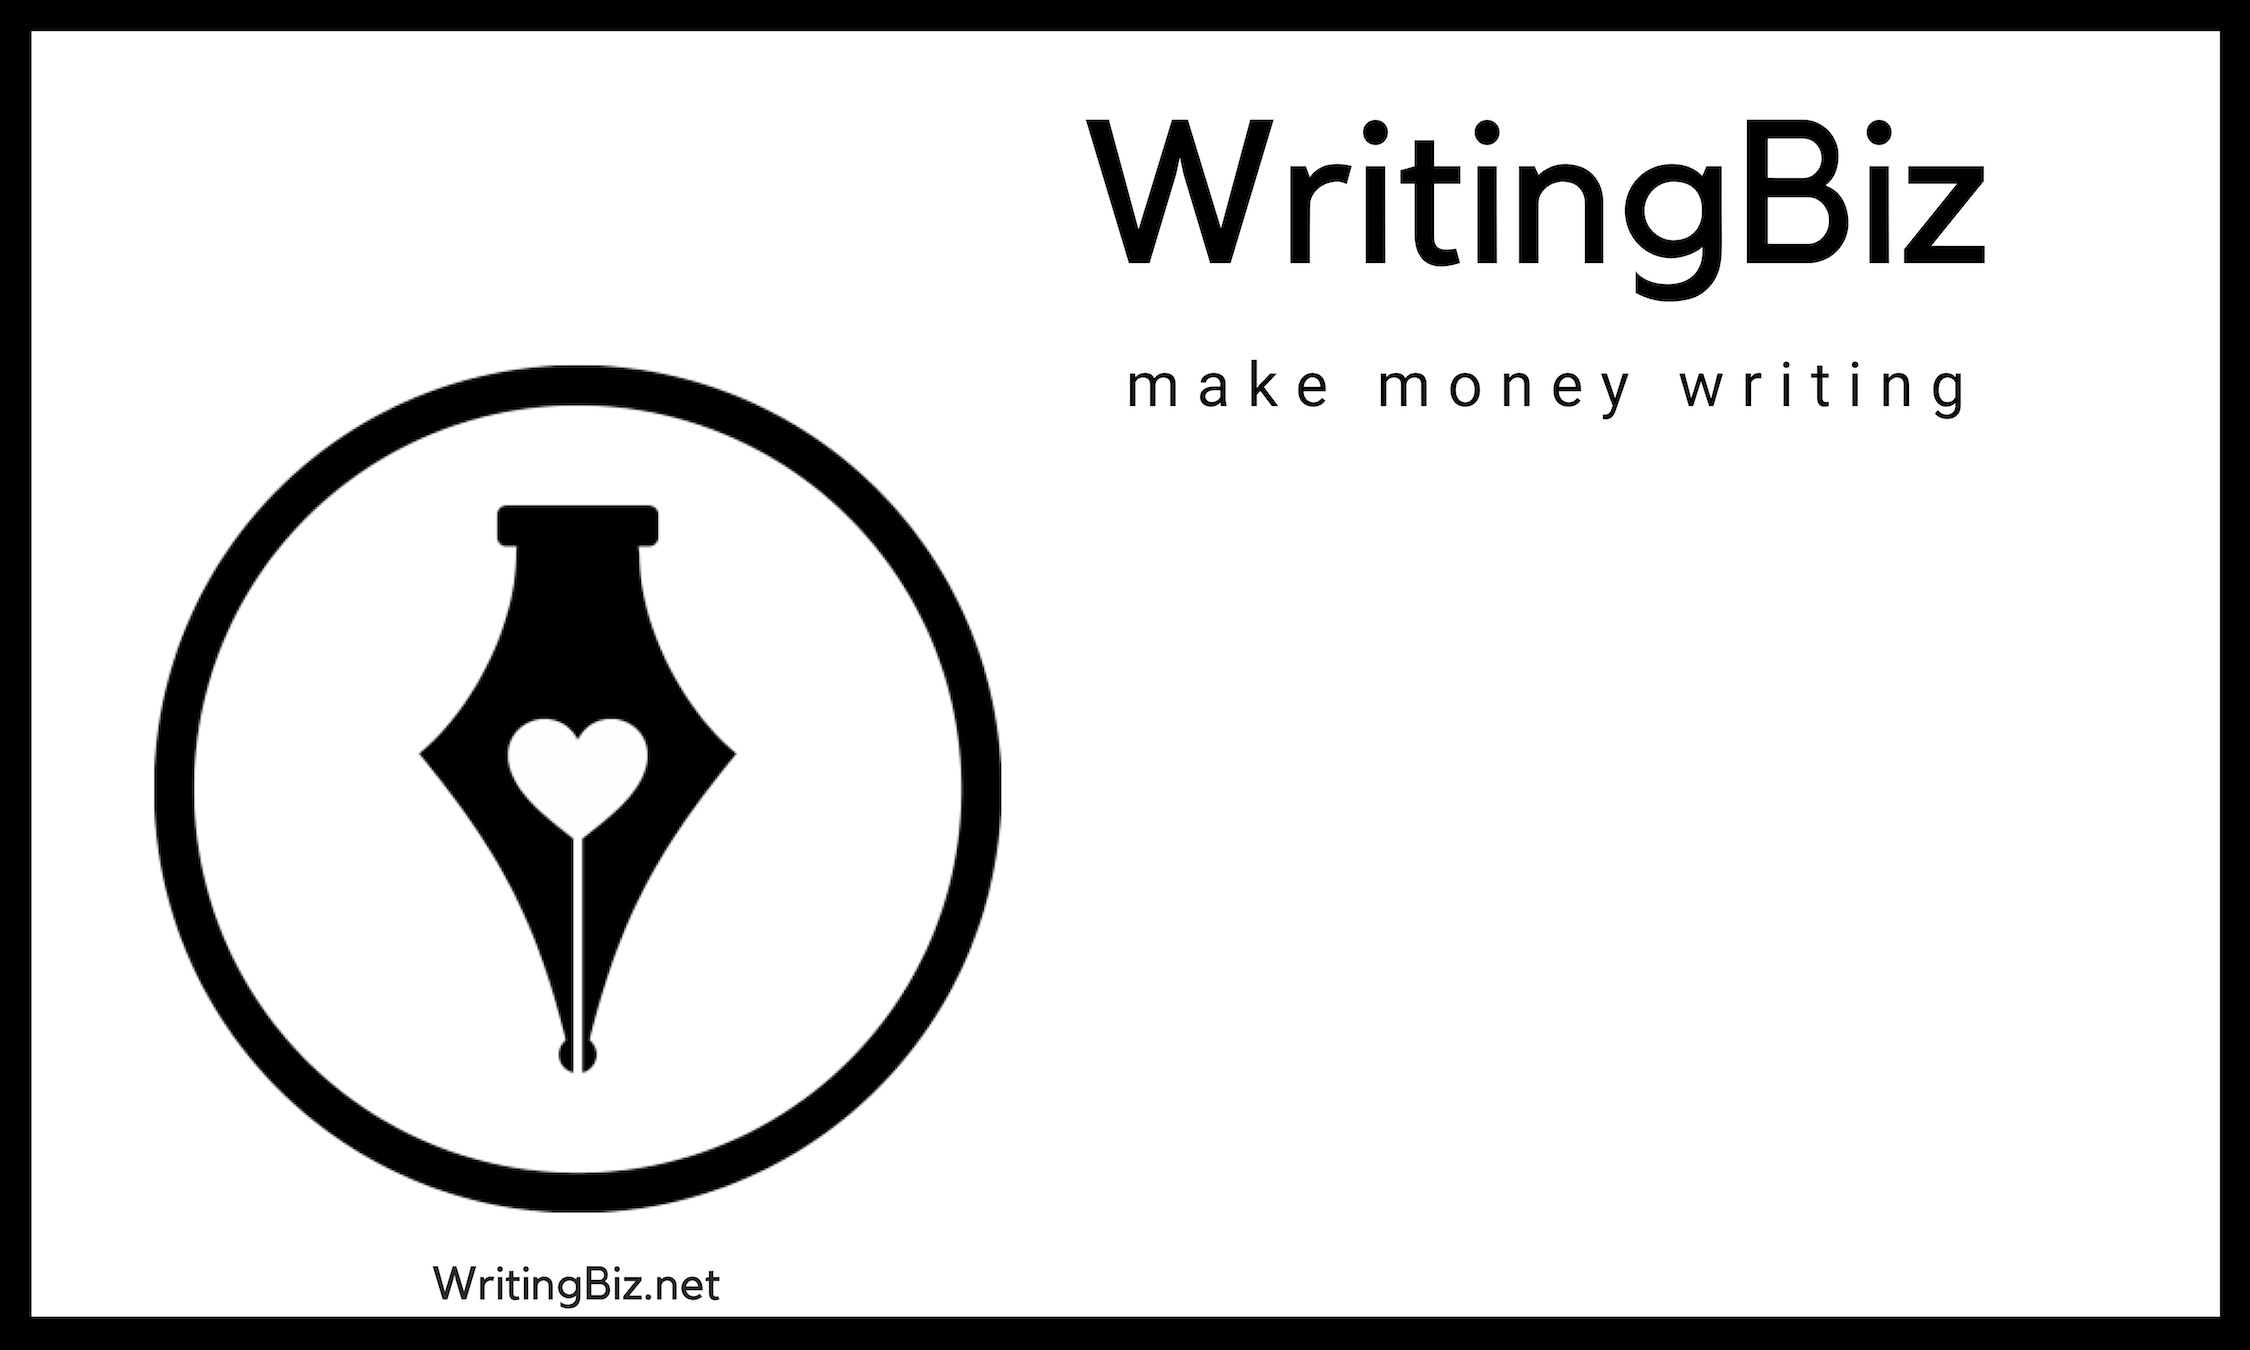 WritingBiz - Make Money Writing